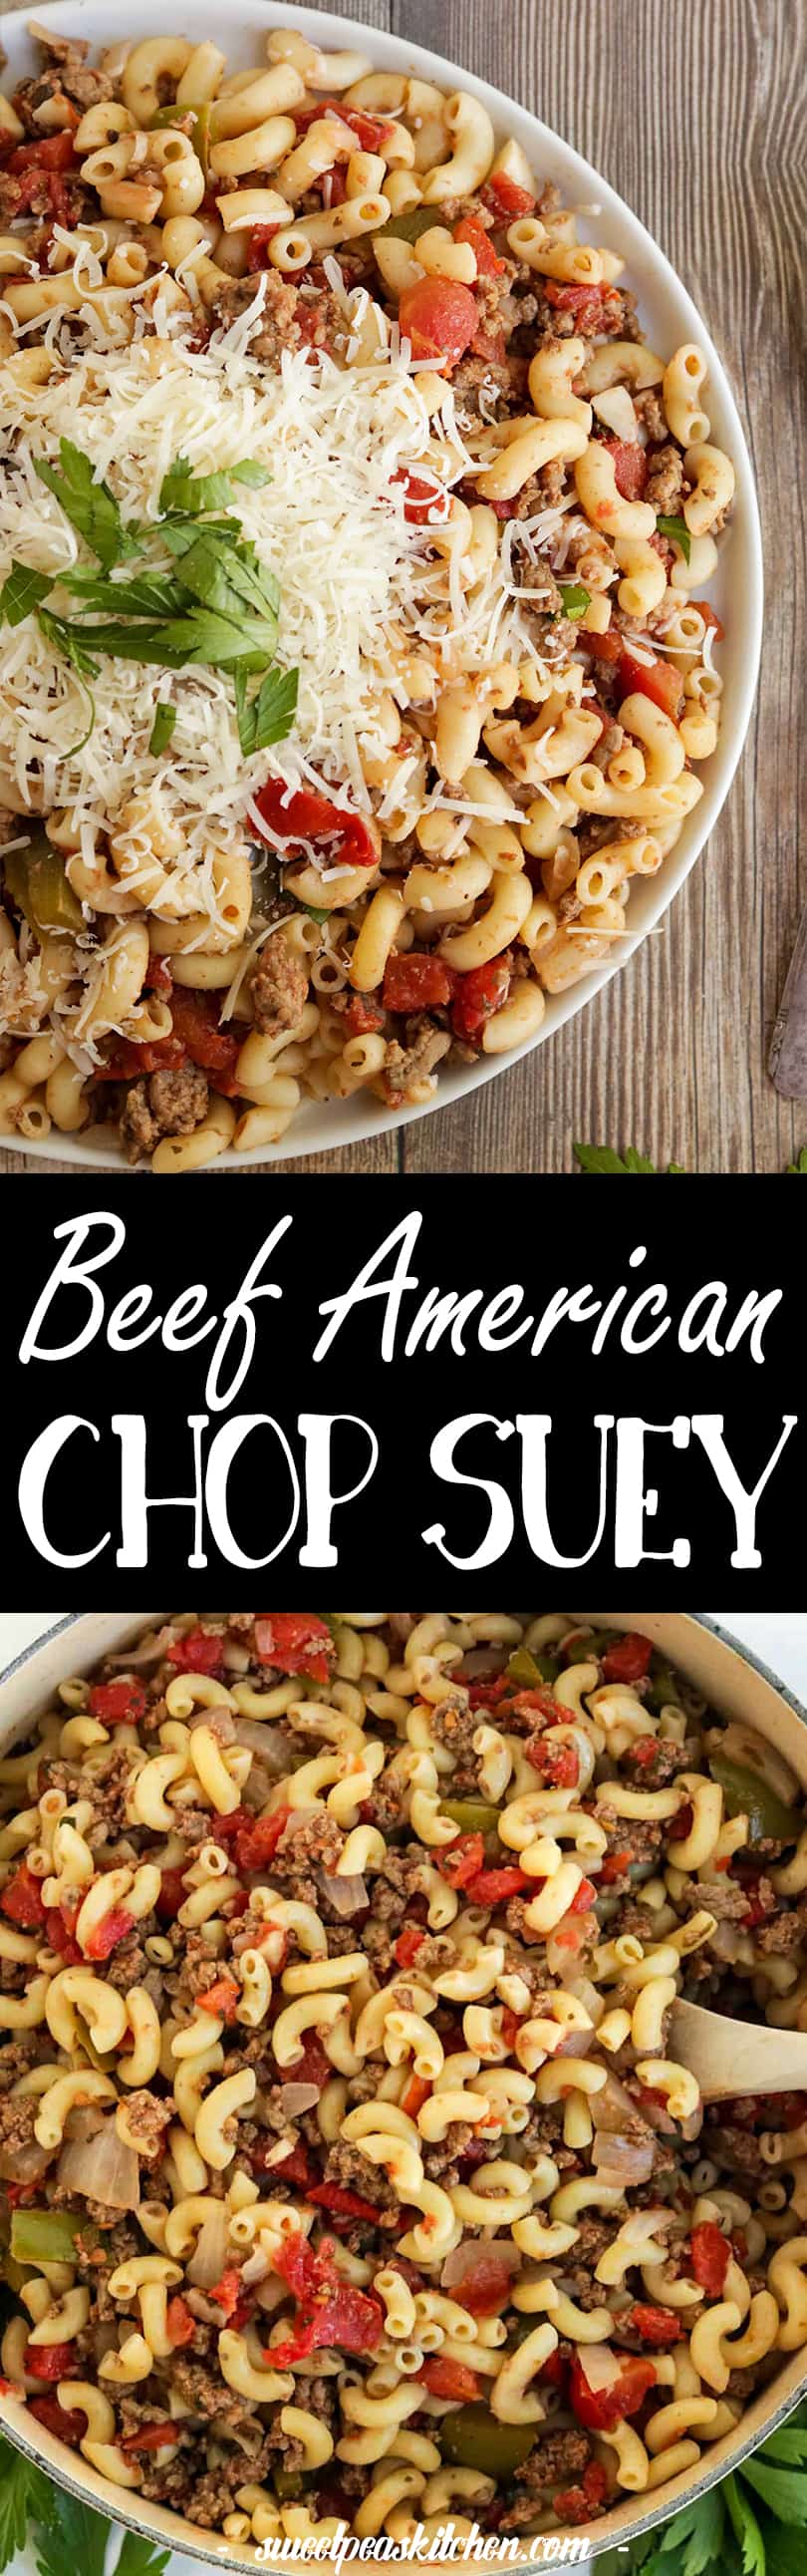 chop suey recipes beef